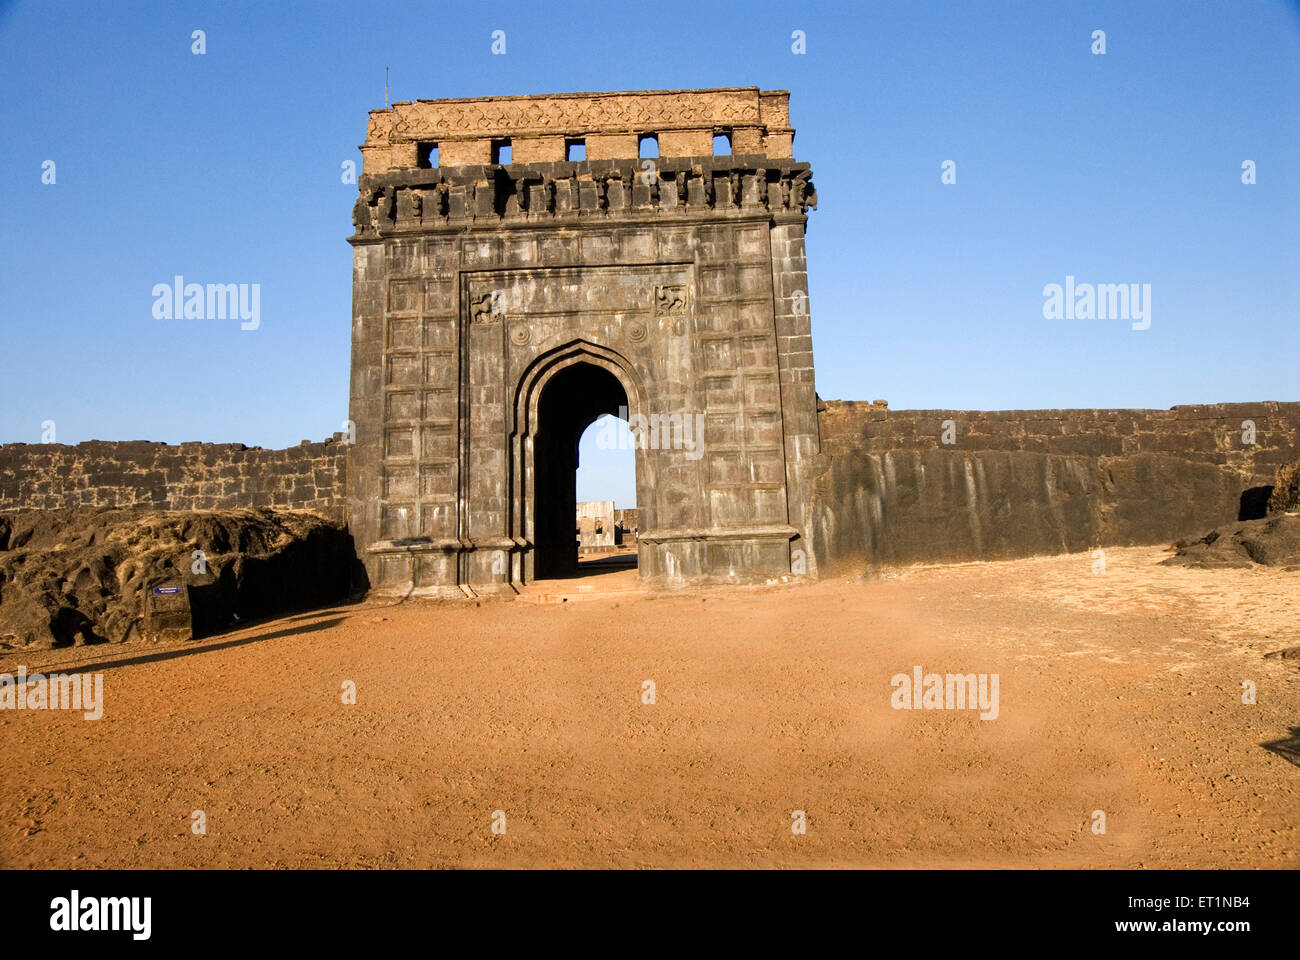 Maha darwaja main entrance and nagarkhana of Raigad fort ; Maharashtra ; India Stock Photo